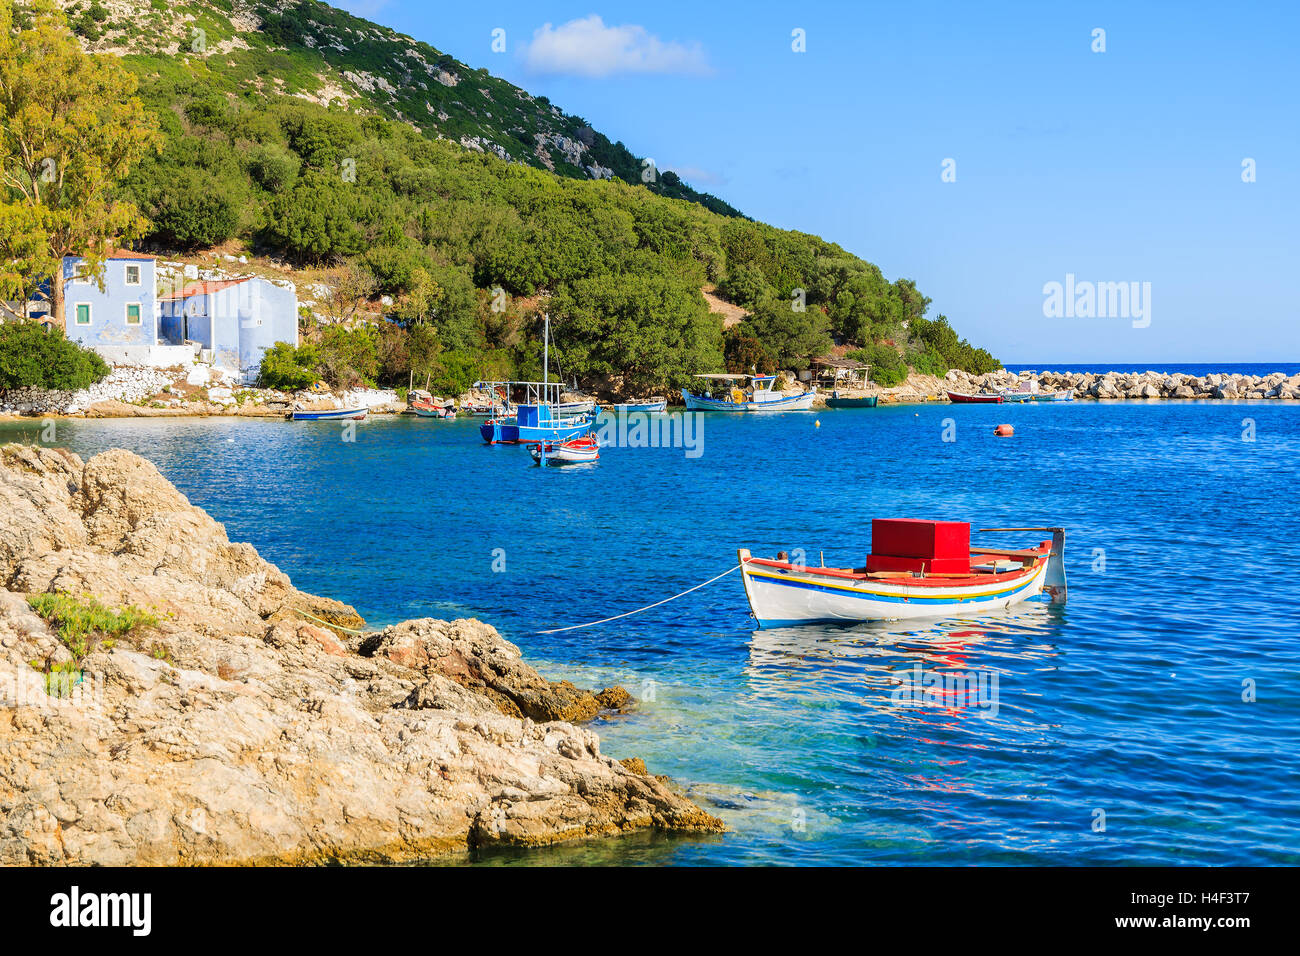 Bateaux de pêche sur la mer bleu dans paysage de montagnes de l'île de Céphalonie, Grèce Banque D'Images